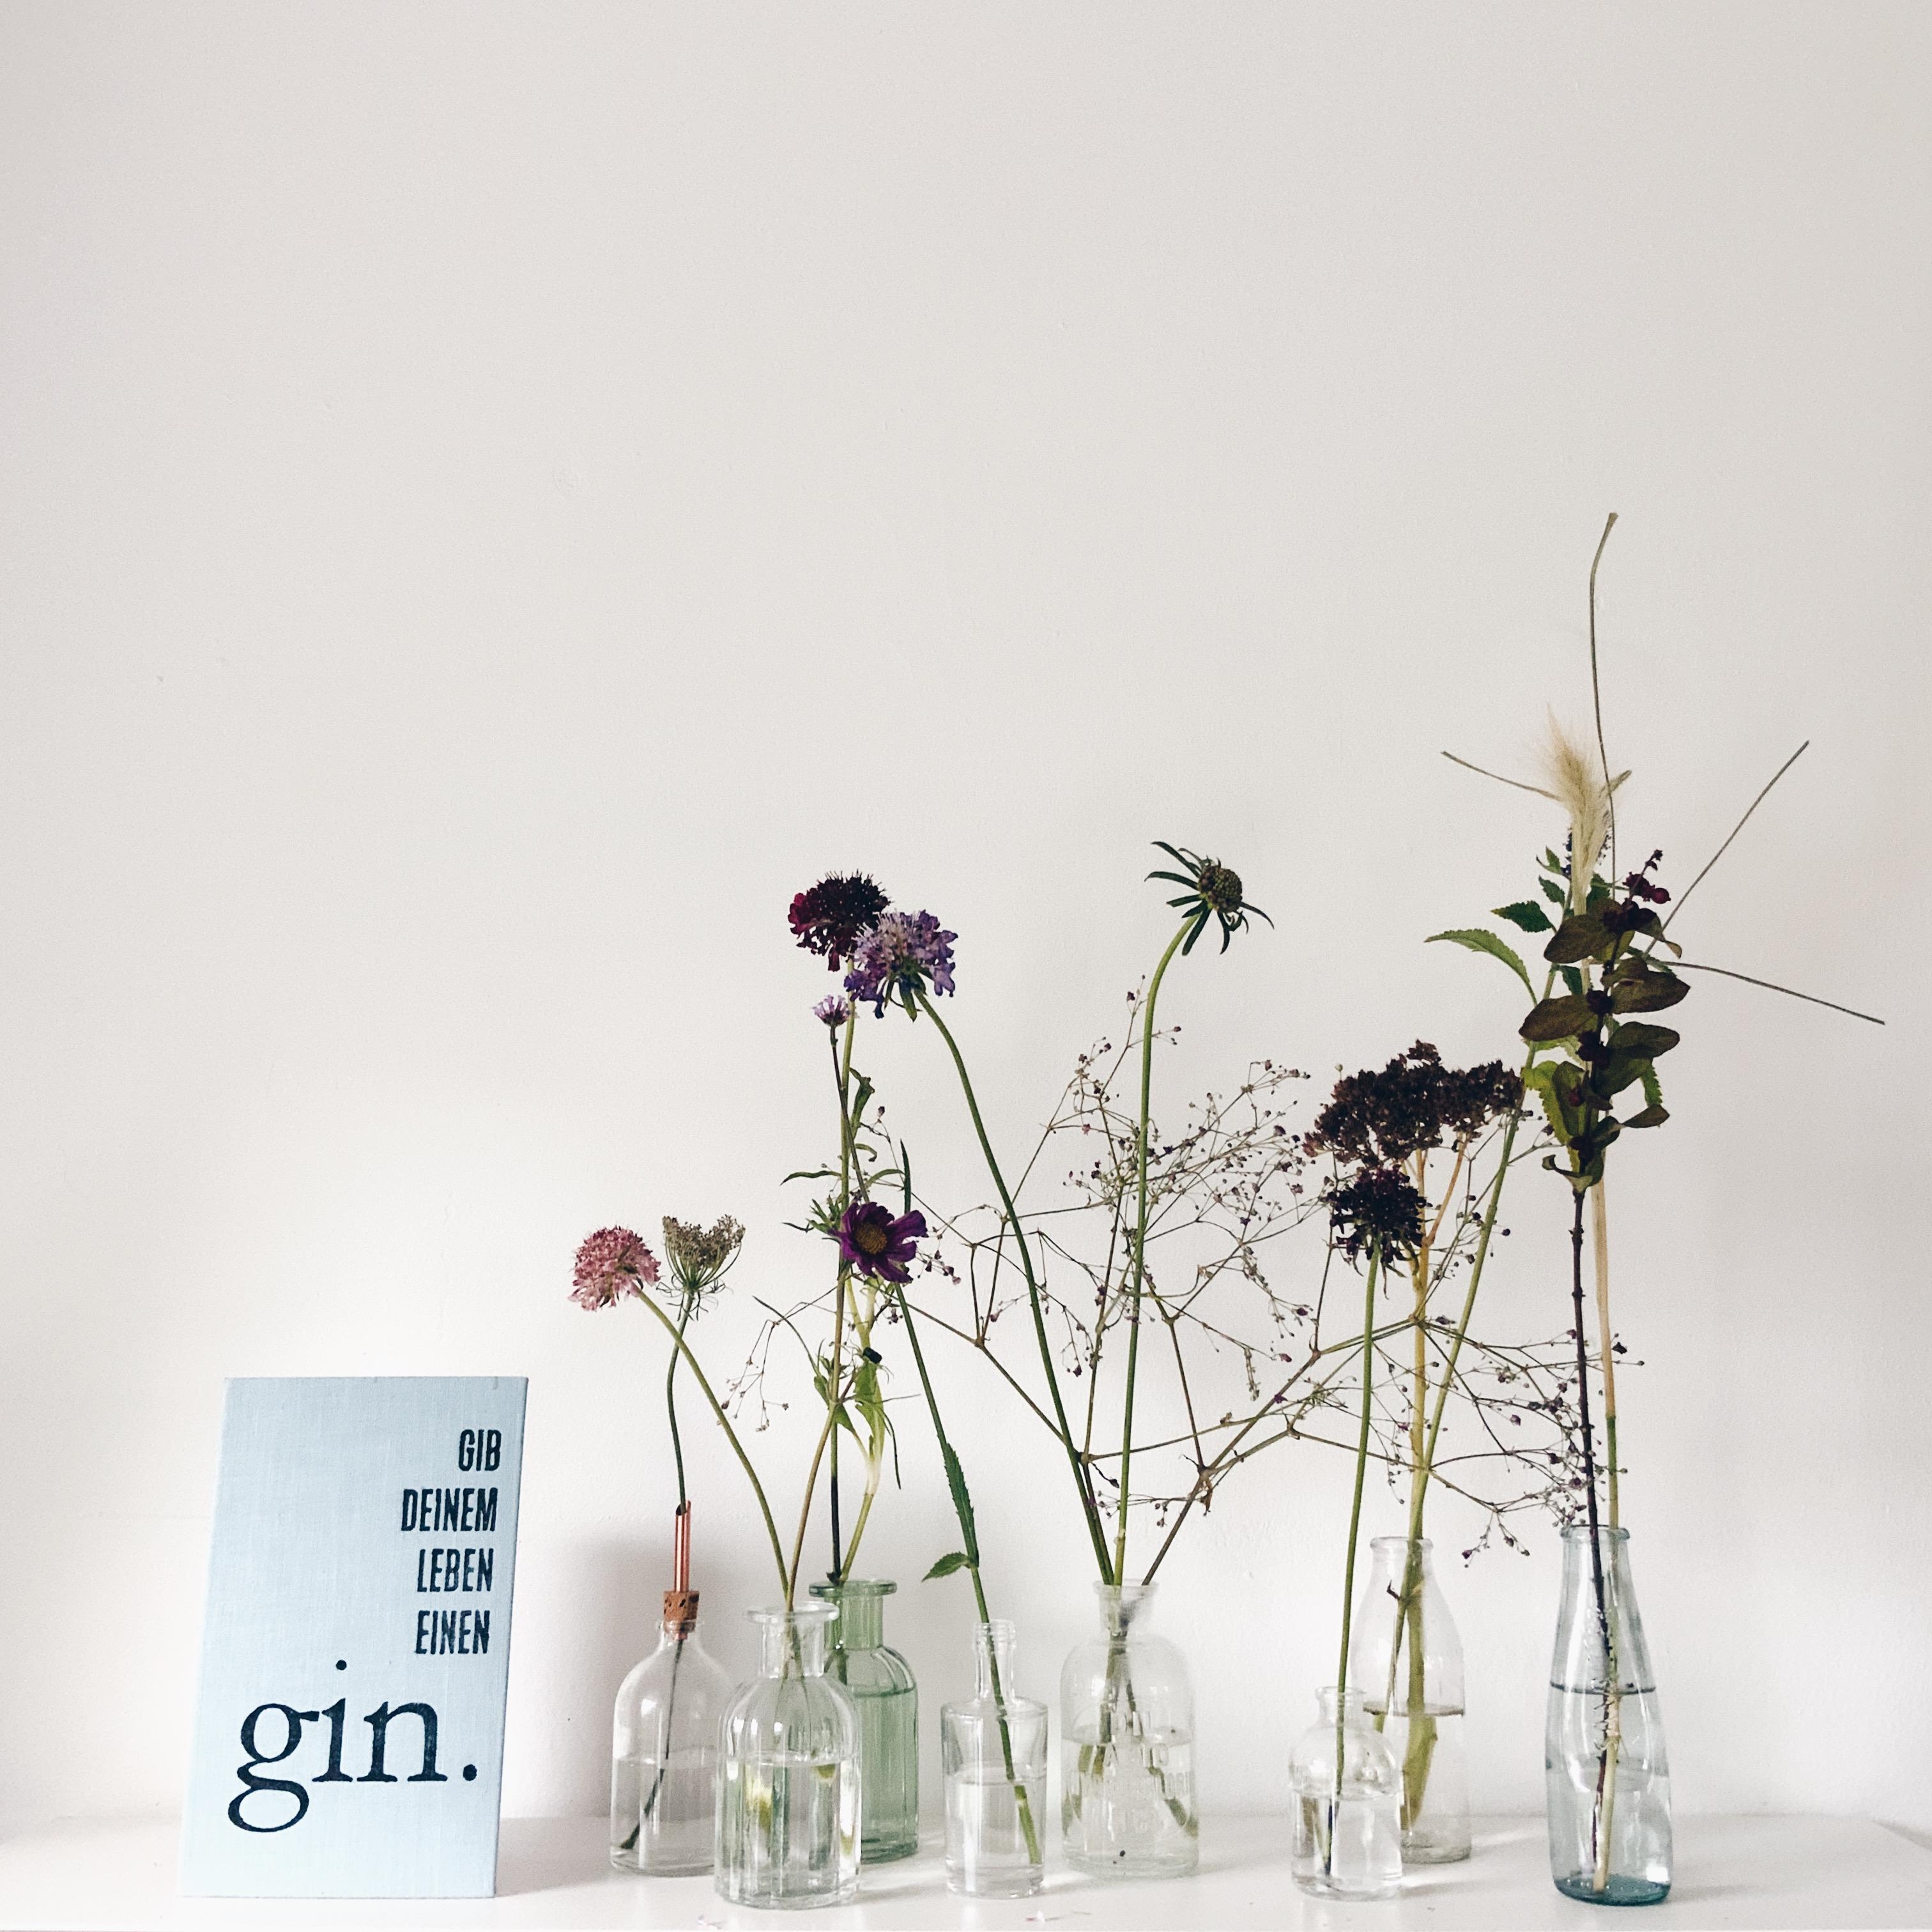 Gib Deinem Leben einen Gin #foodchallenge #lieblingsdrink #ginlover #letterpressprint 